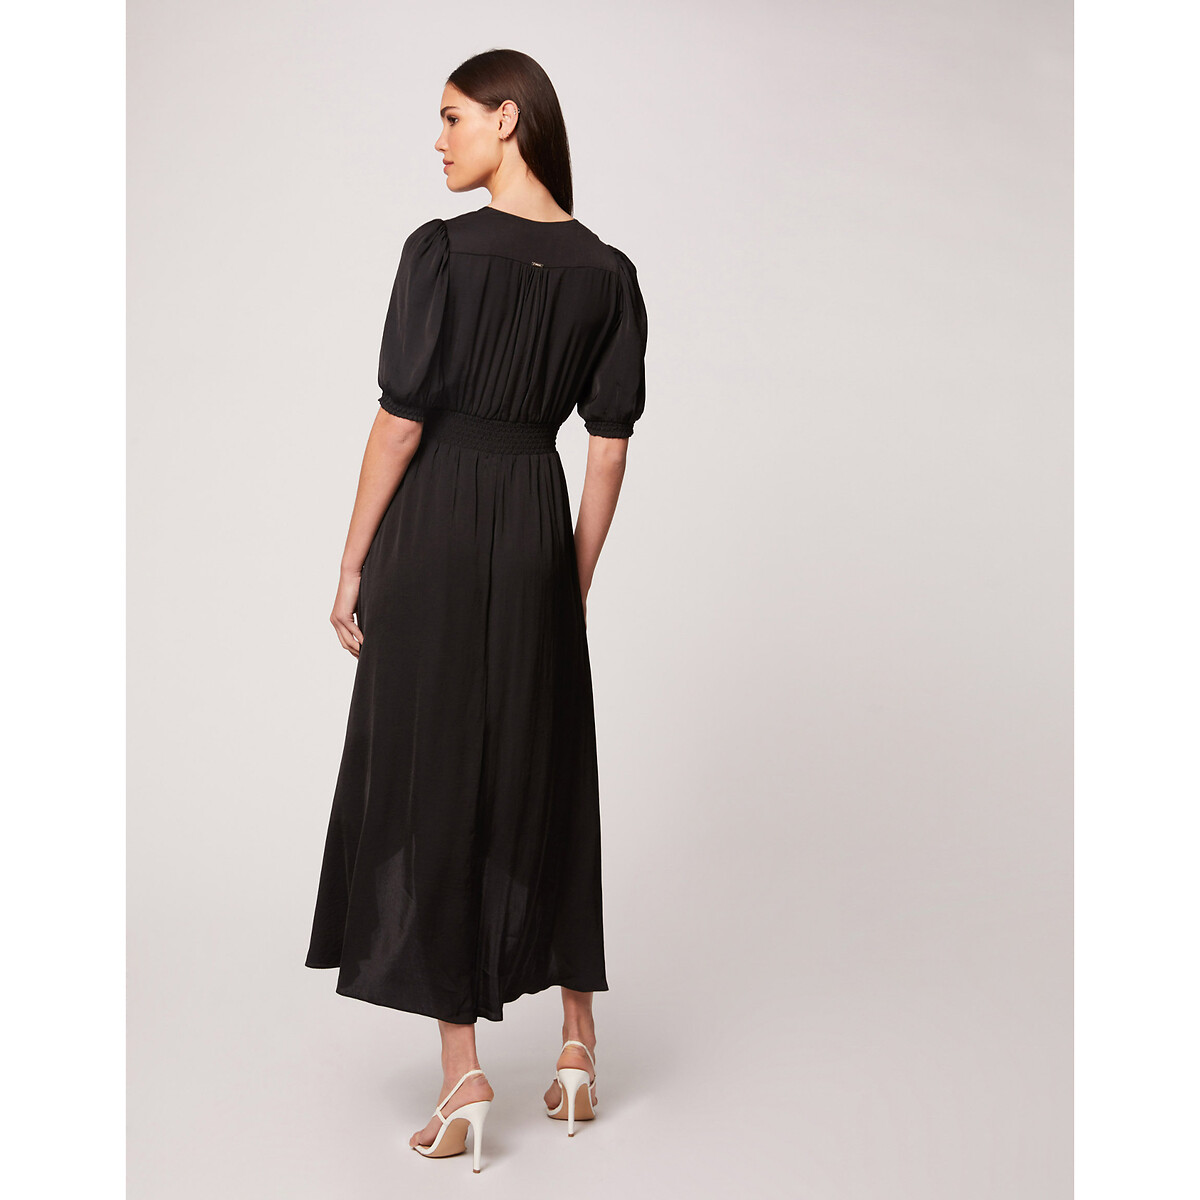 Платье LaRedoute Длинное с короткими рукавами V-образный врыез 44 черный, размер 44 - фото 3